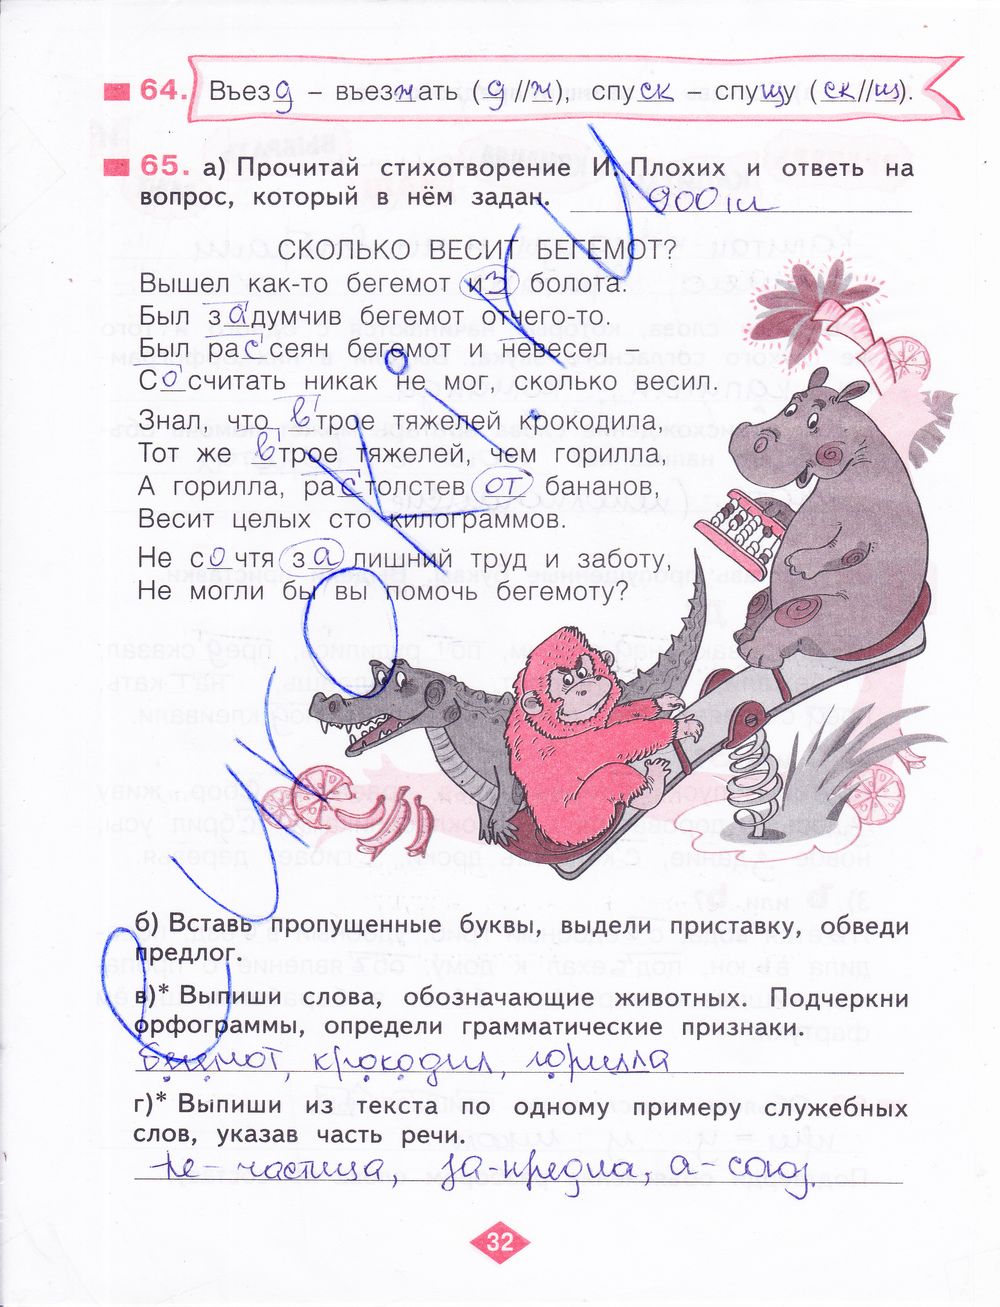 ГДЗ Русский язык 3 класс - стр. 32